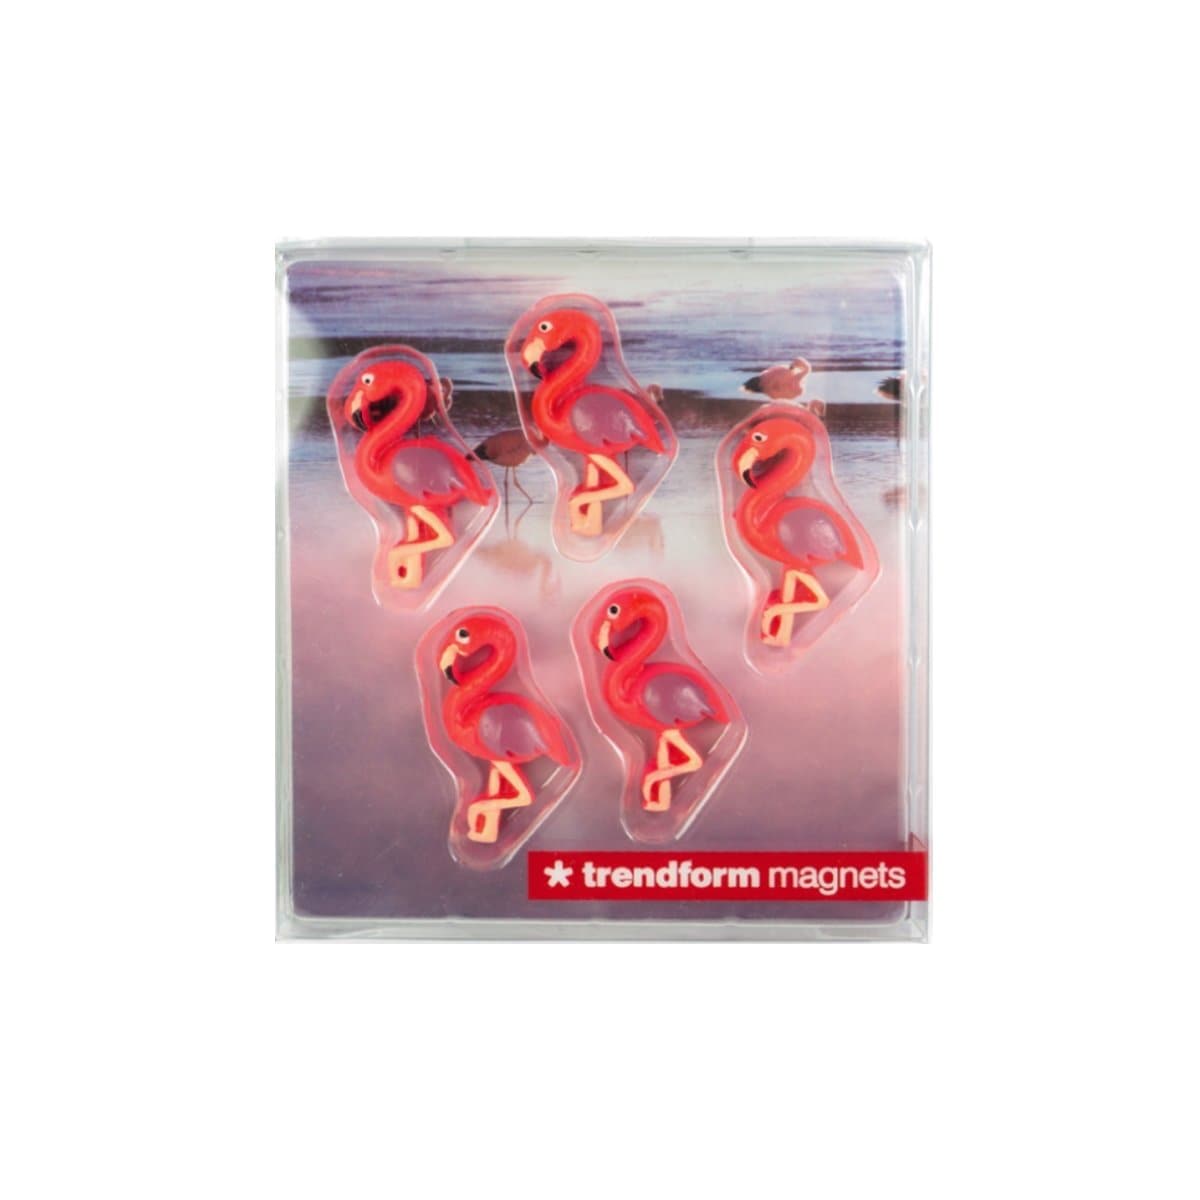 Trendform Magnets FLAMINGO, 5/pack, Pink